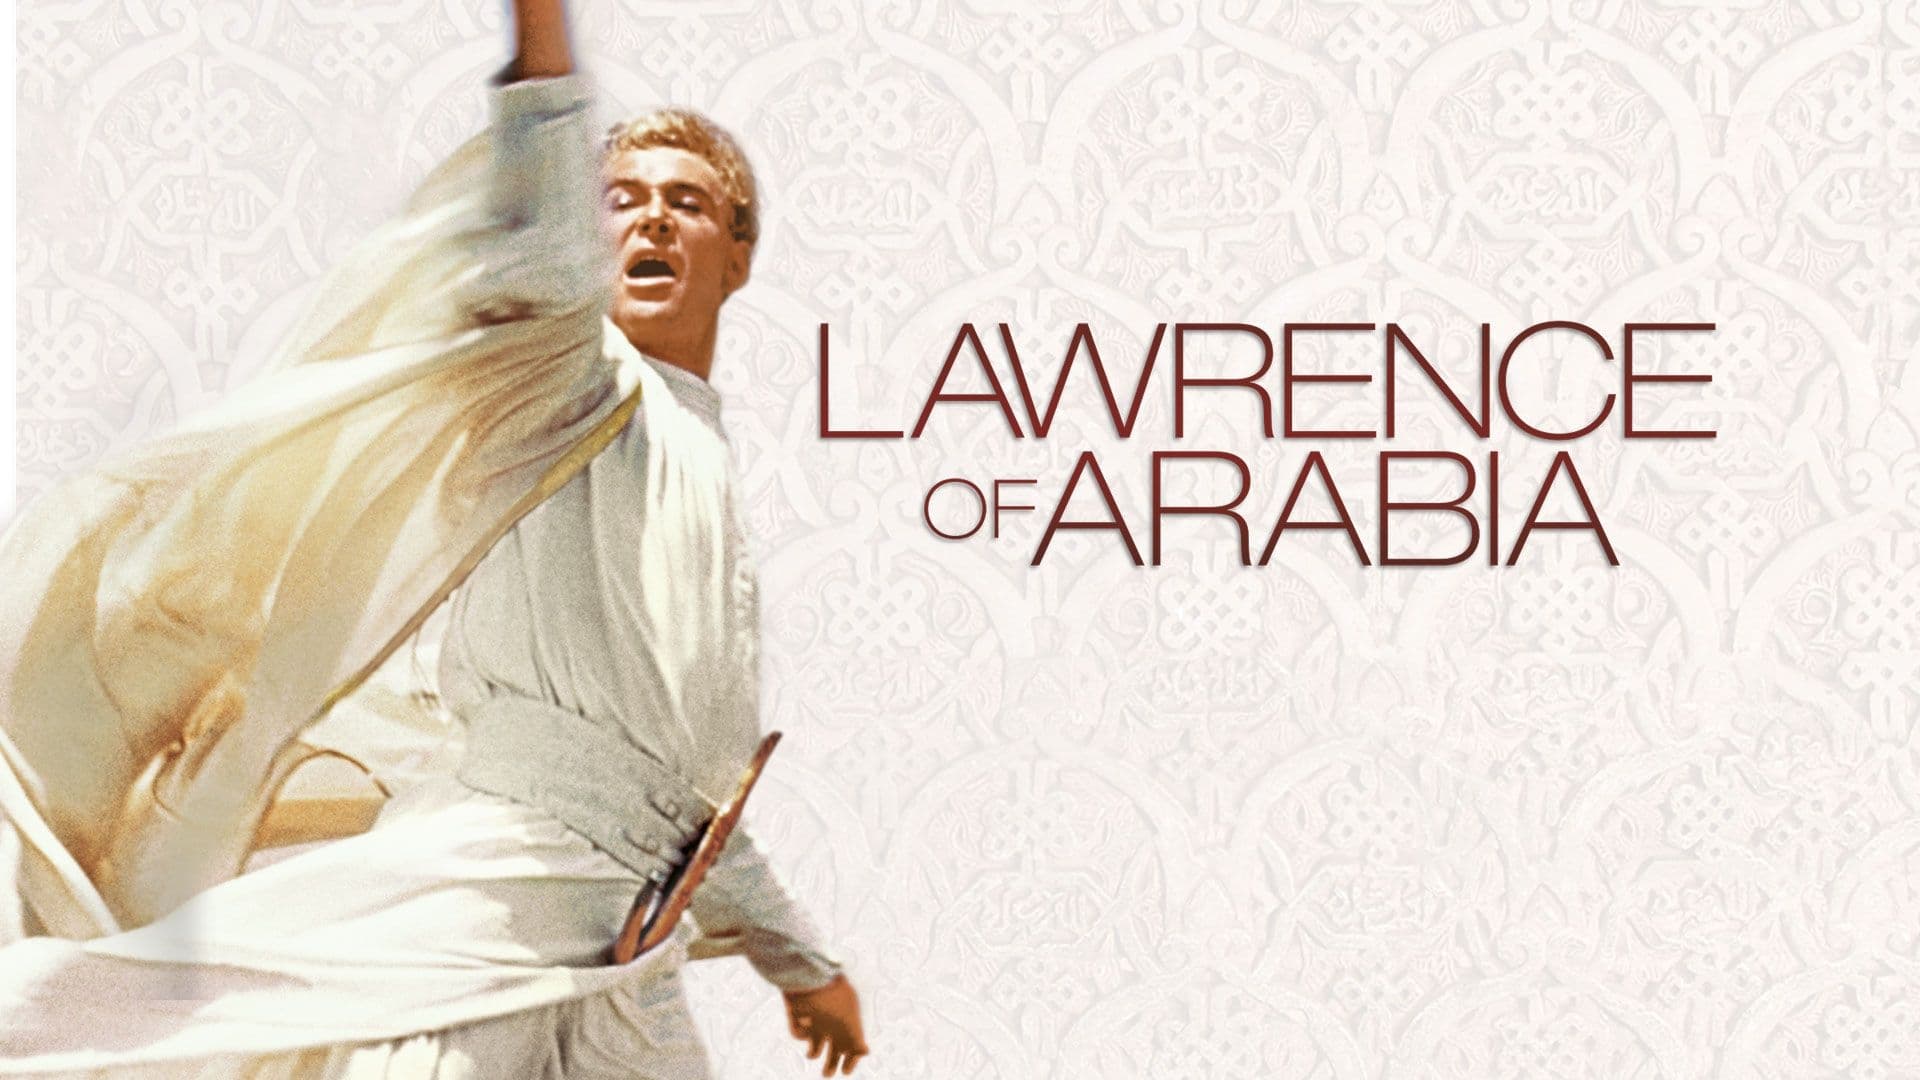 Ο Λόρενς της Αραβίας (1962)